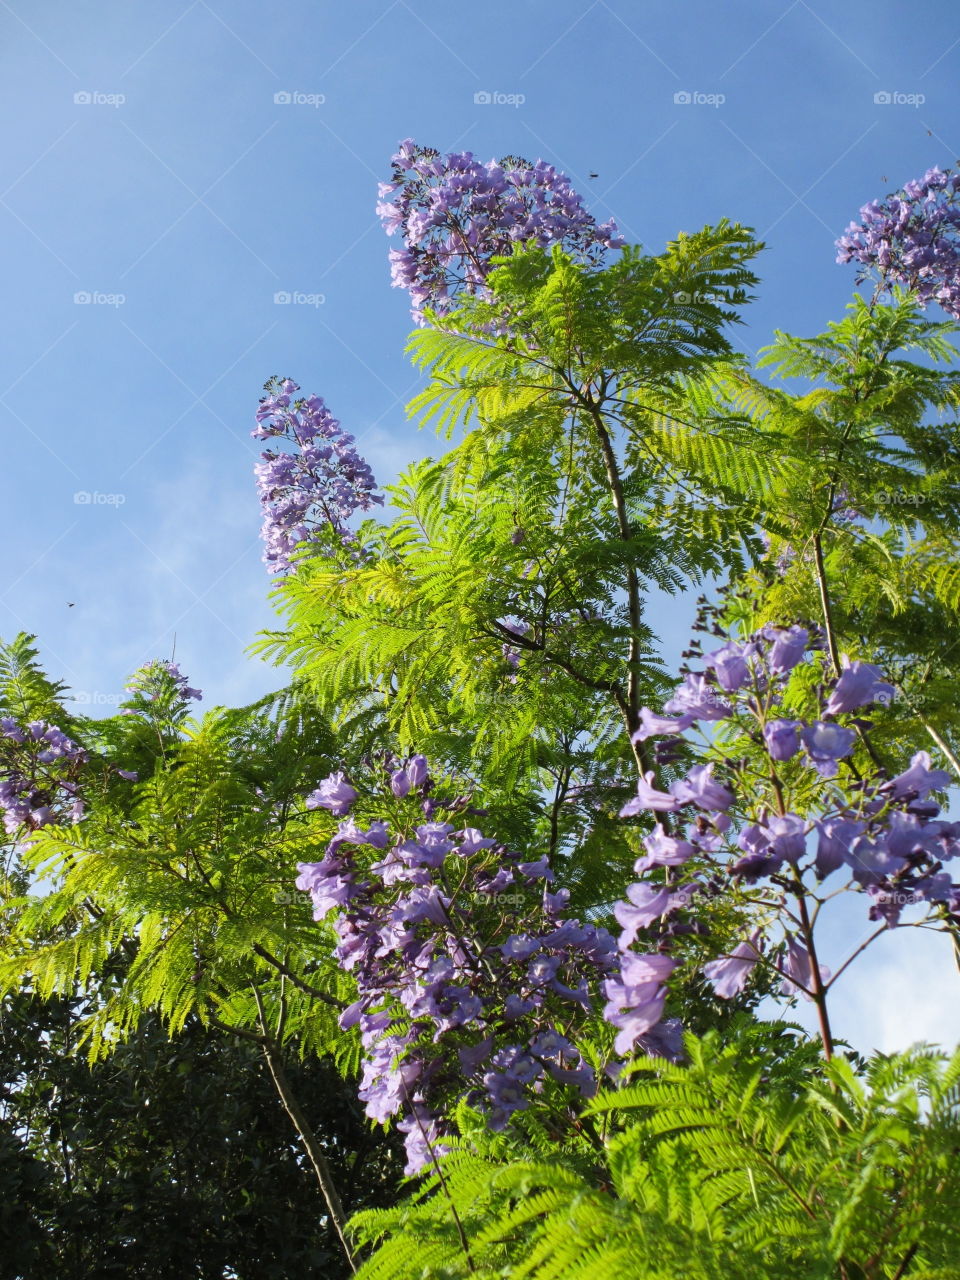 Jacaranda tree in bloom. Purple flowers of the Jacaranda tree against the blue sky